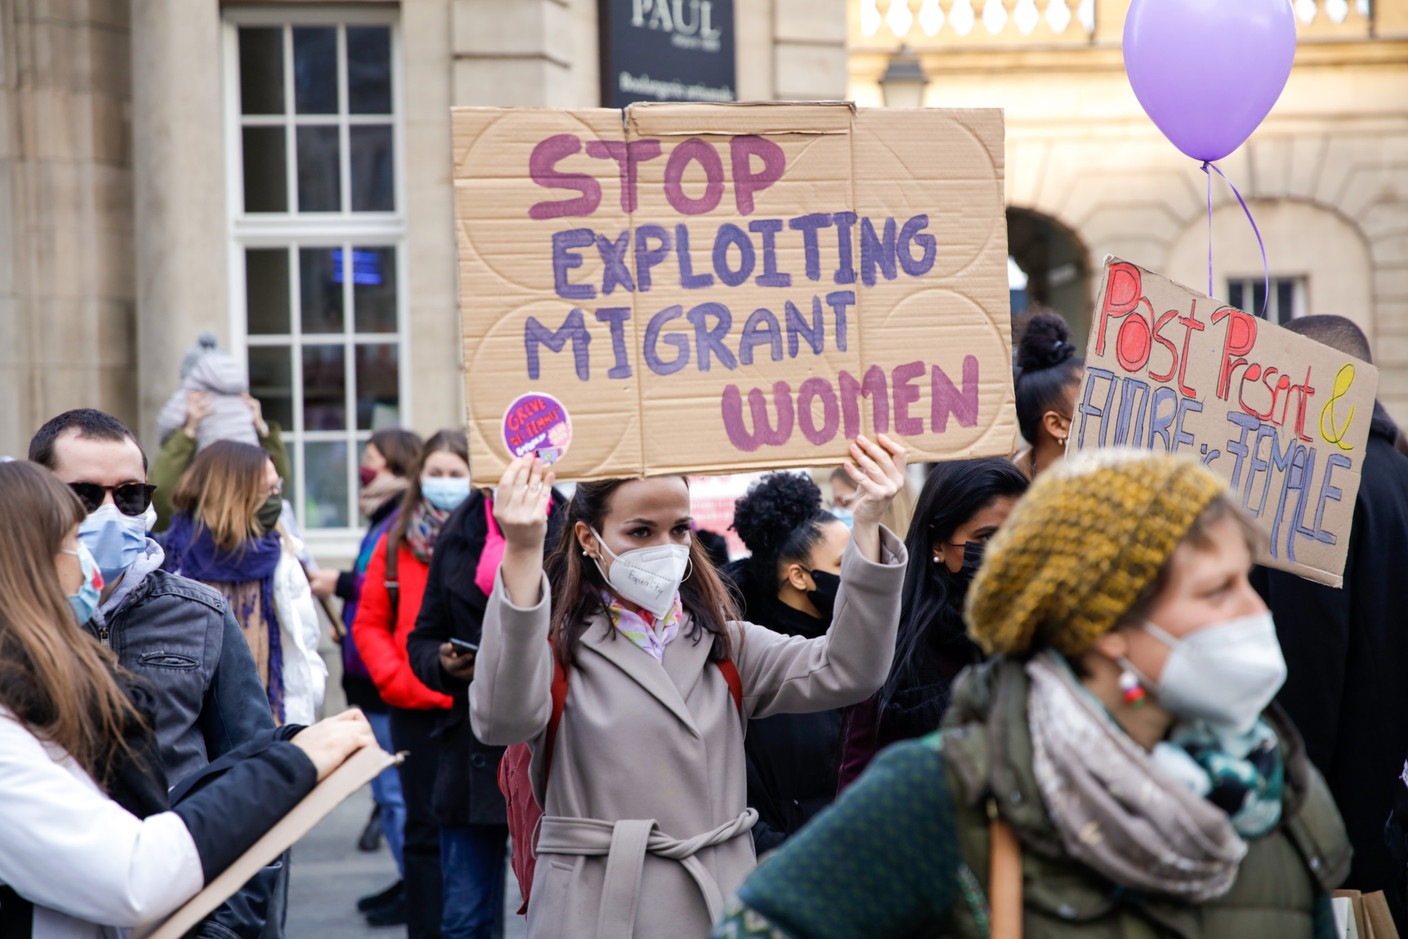 Des messages pour appeler à mettre fin à l’exploitation des migrantes. (Photo: Romain Gamba / Maison Moderne)